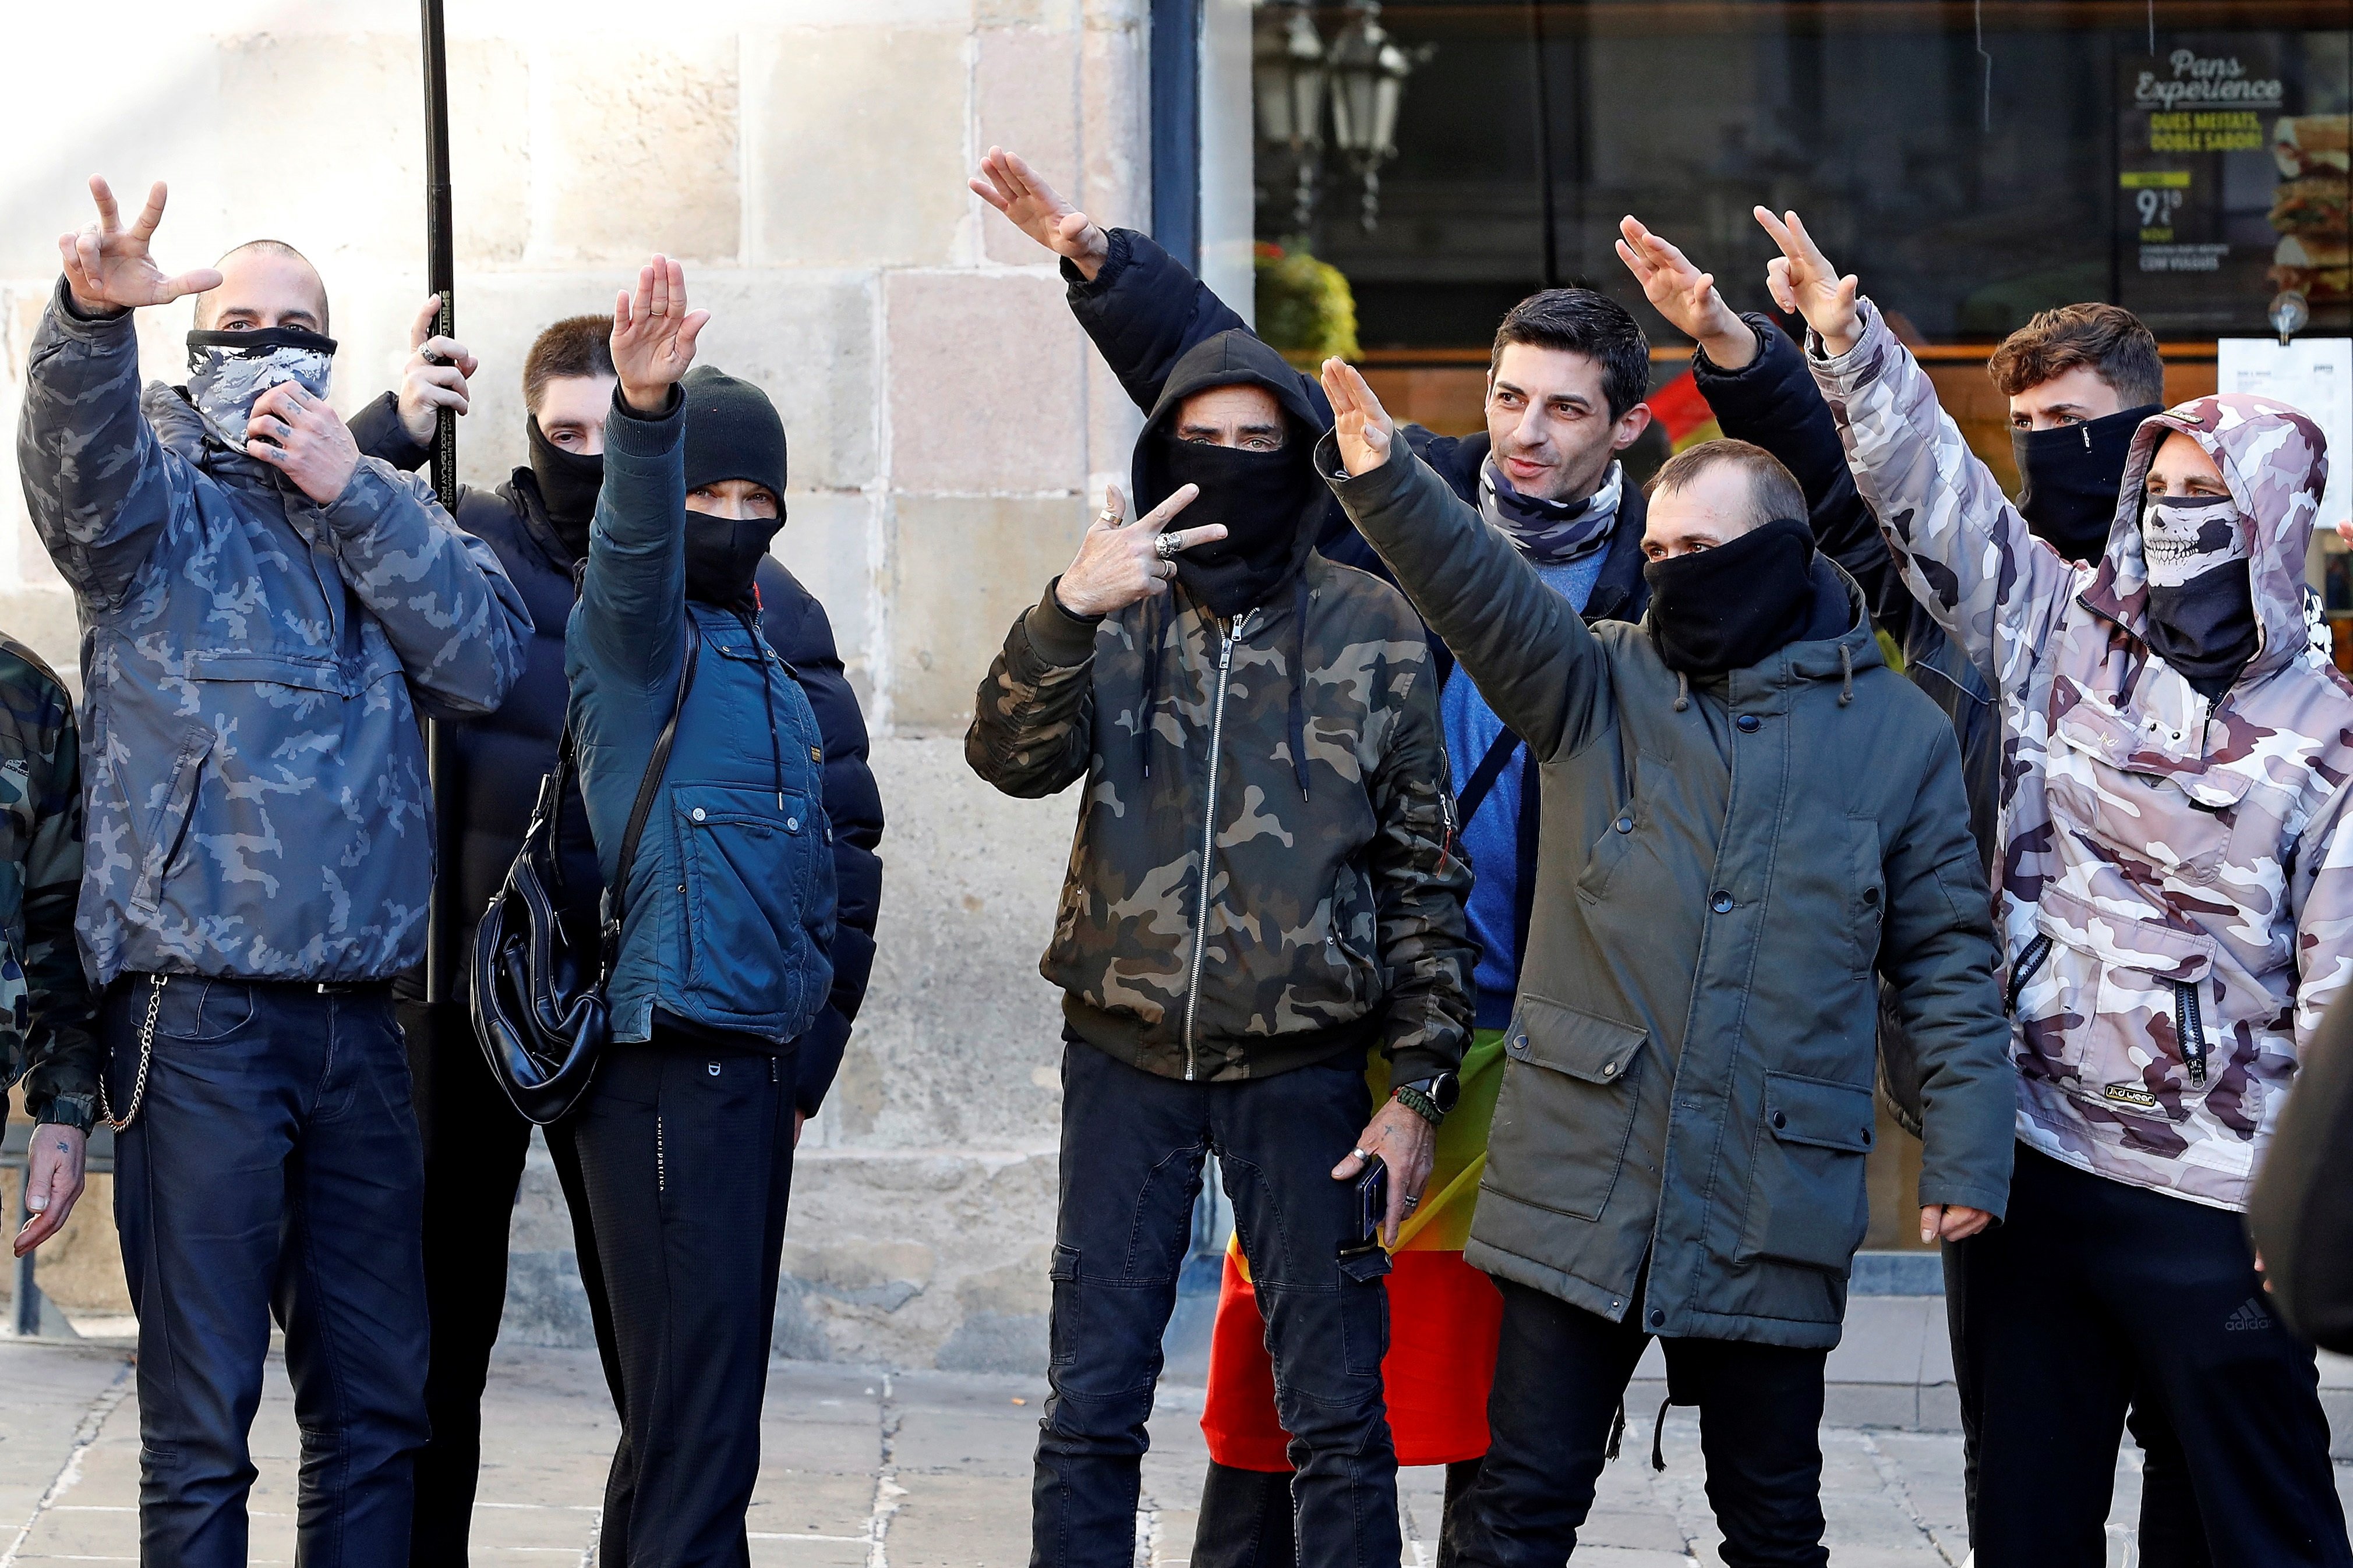 Barcelona denuncia l'exhibició de símbols nazis a l'acte de Vox a Sant Jaume